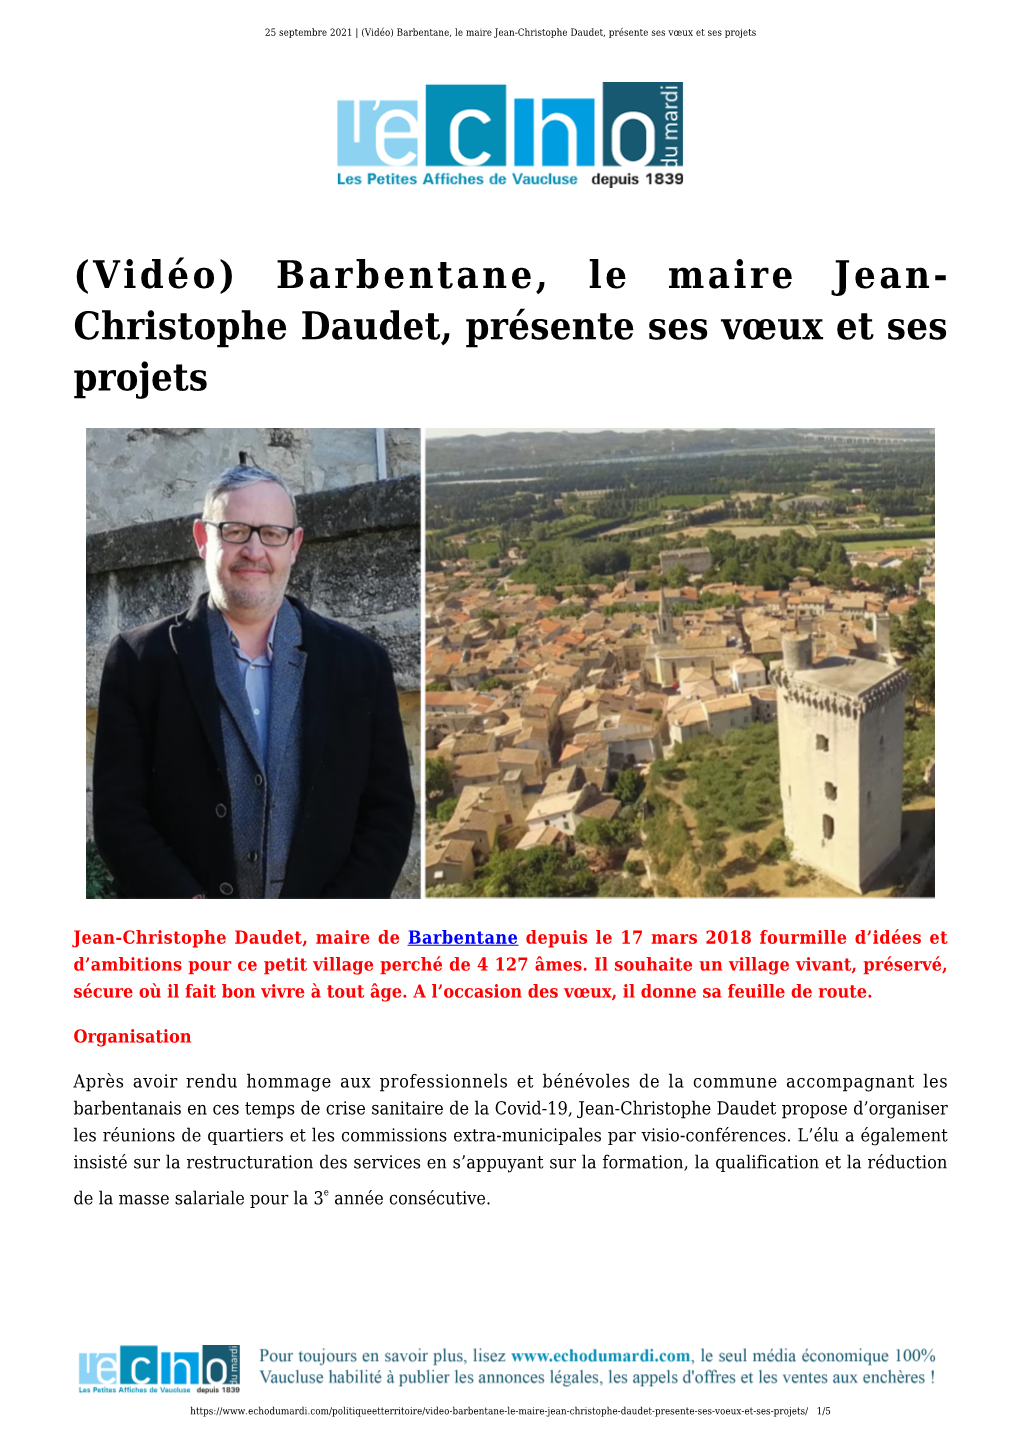 (Vidéo) Barbentane, Le Maire Jean-Christophe Daudet, Présente Ses Vœux Et Ses Projets